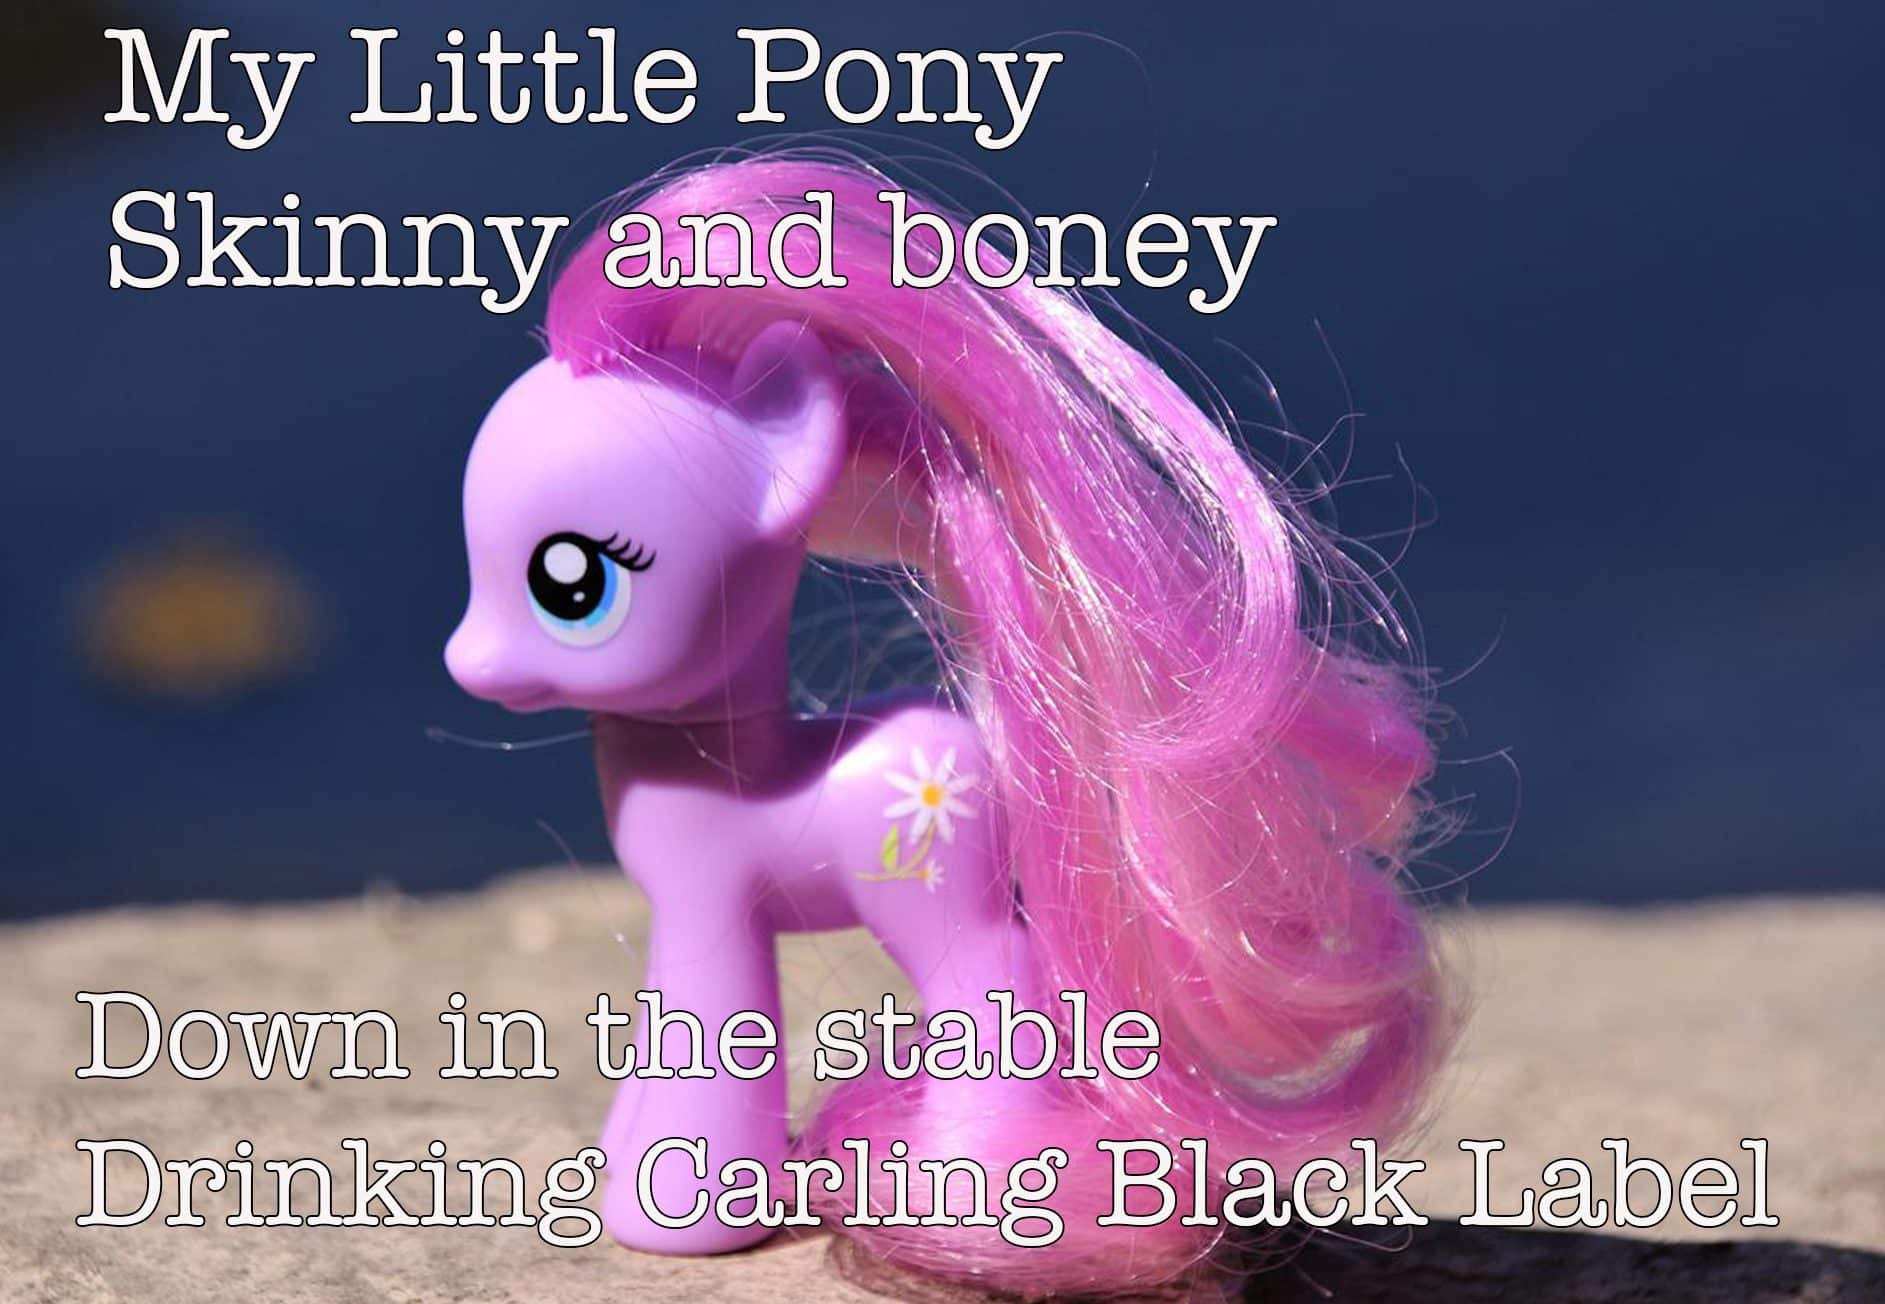 My little pony skinny and bony song lyrics